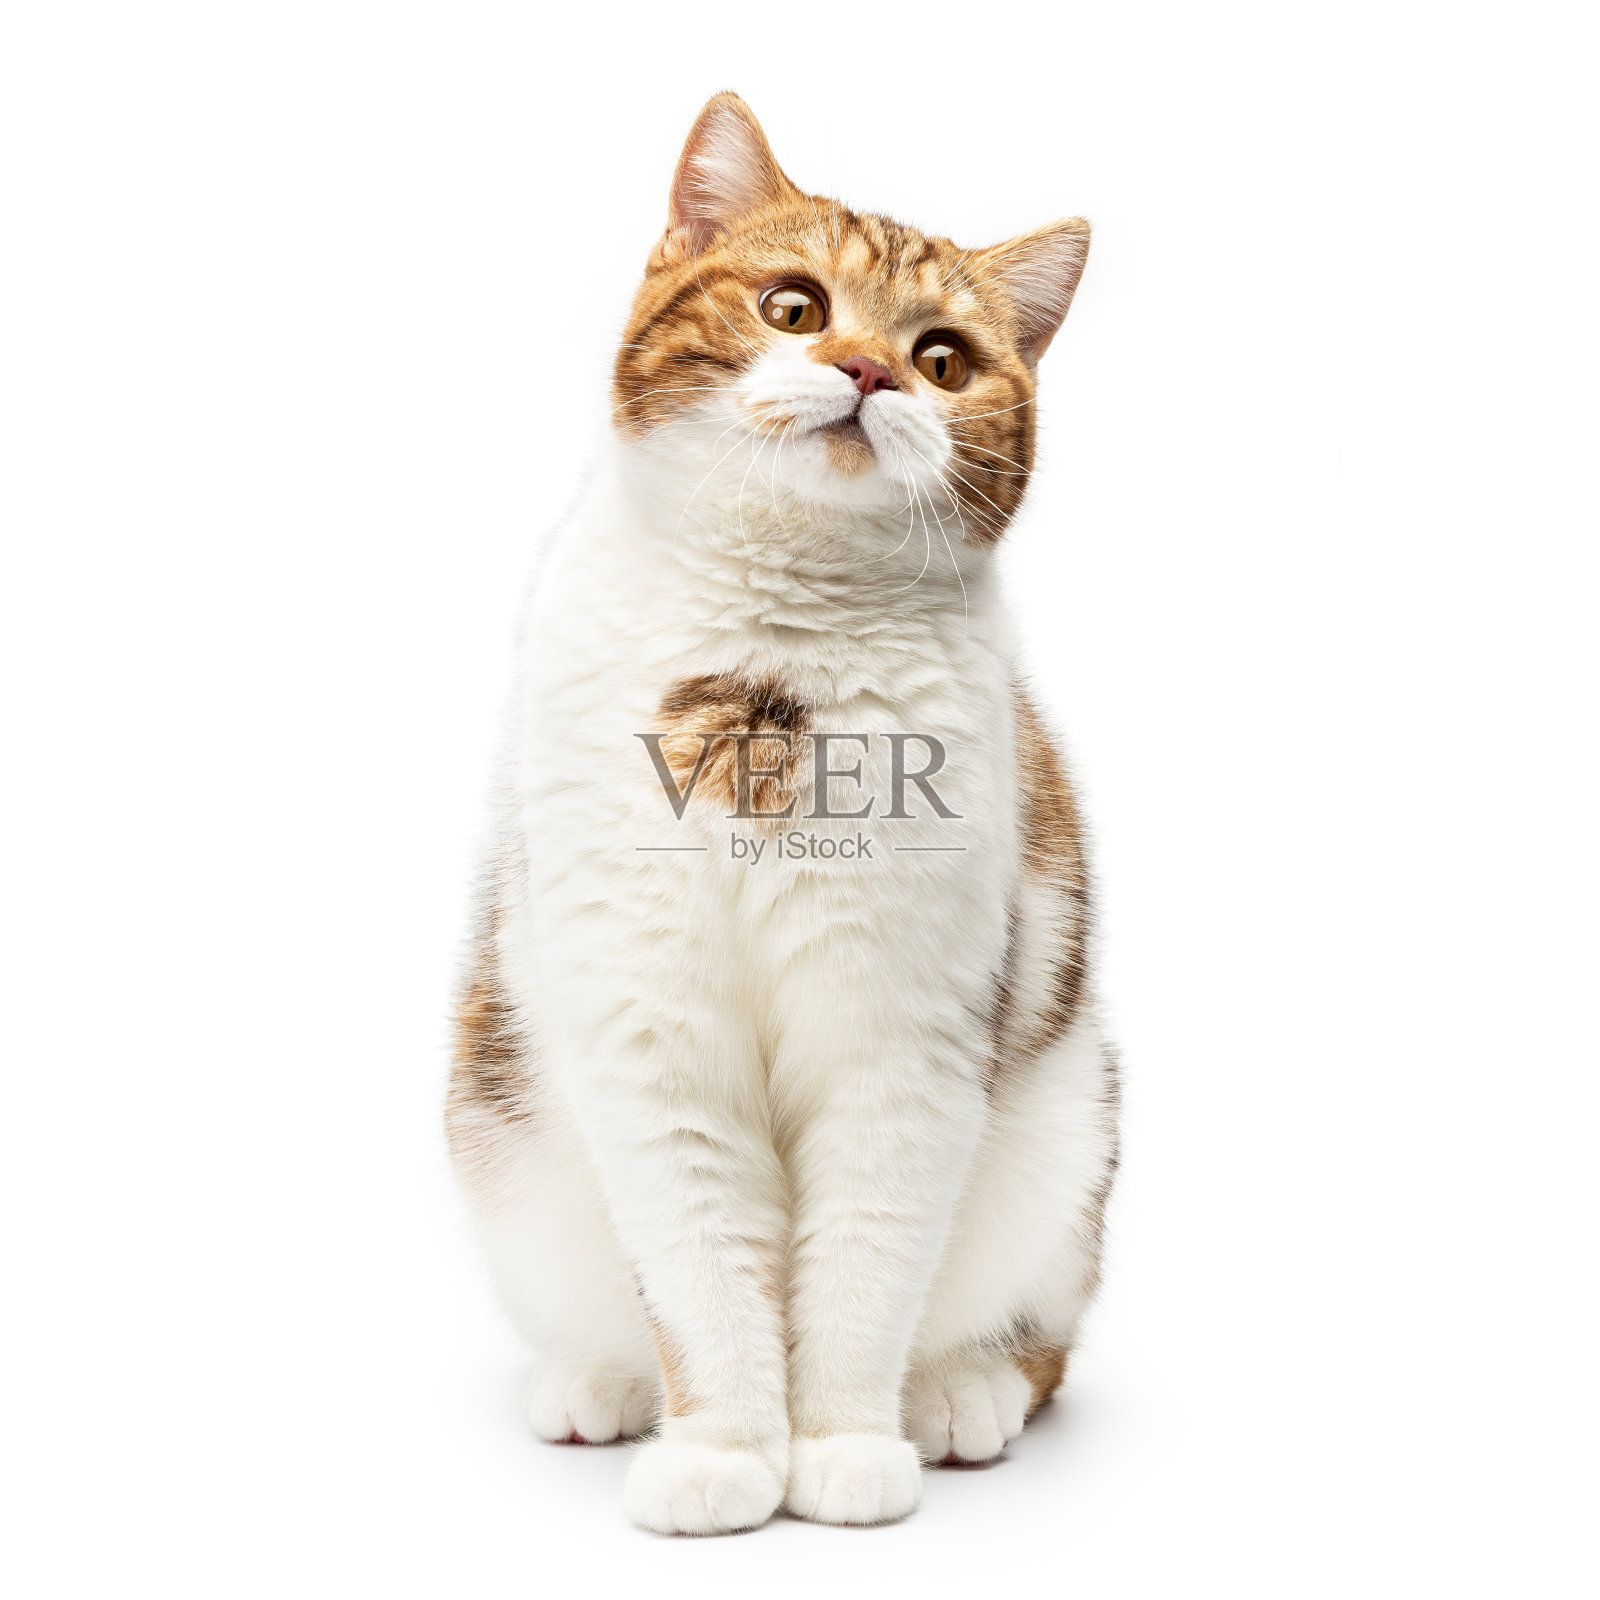 一只英国猫孤立地坐在白色背景上。小短毛猫坐着抬头看着漂亮可爱的大眼睛，前面的视点有白色和橙色的毛色条纹照片摄影图片